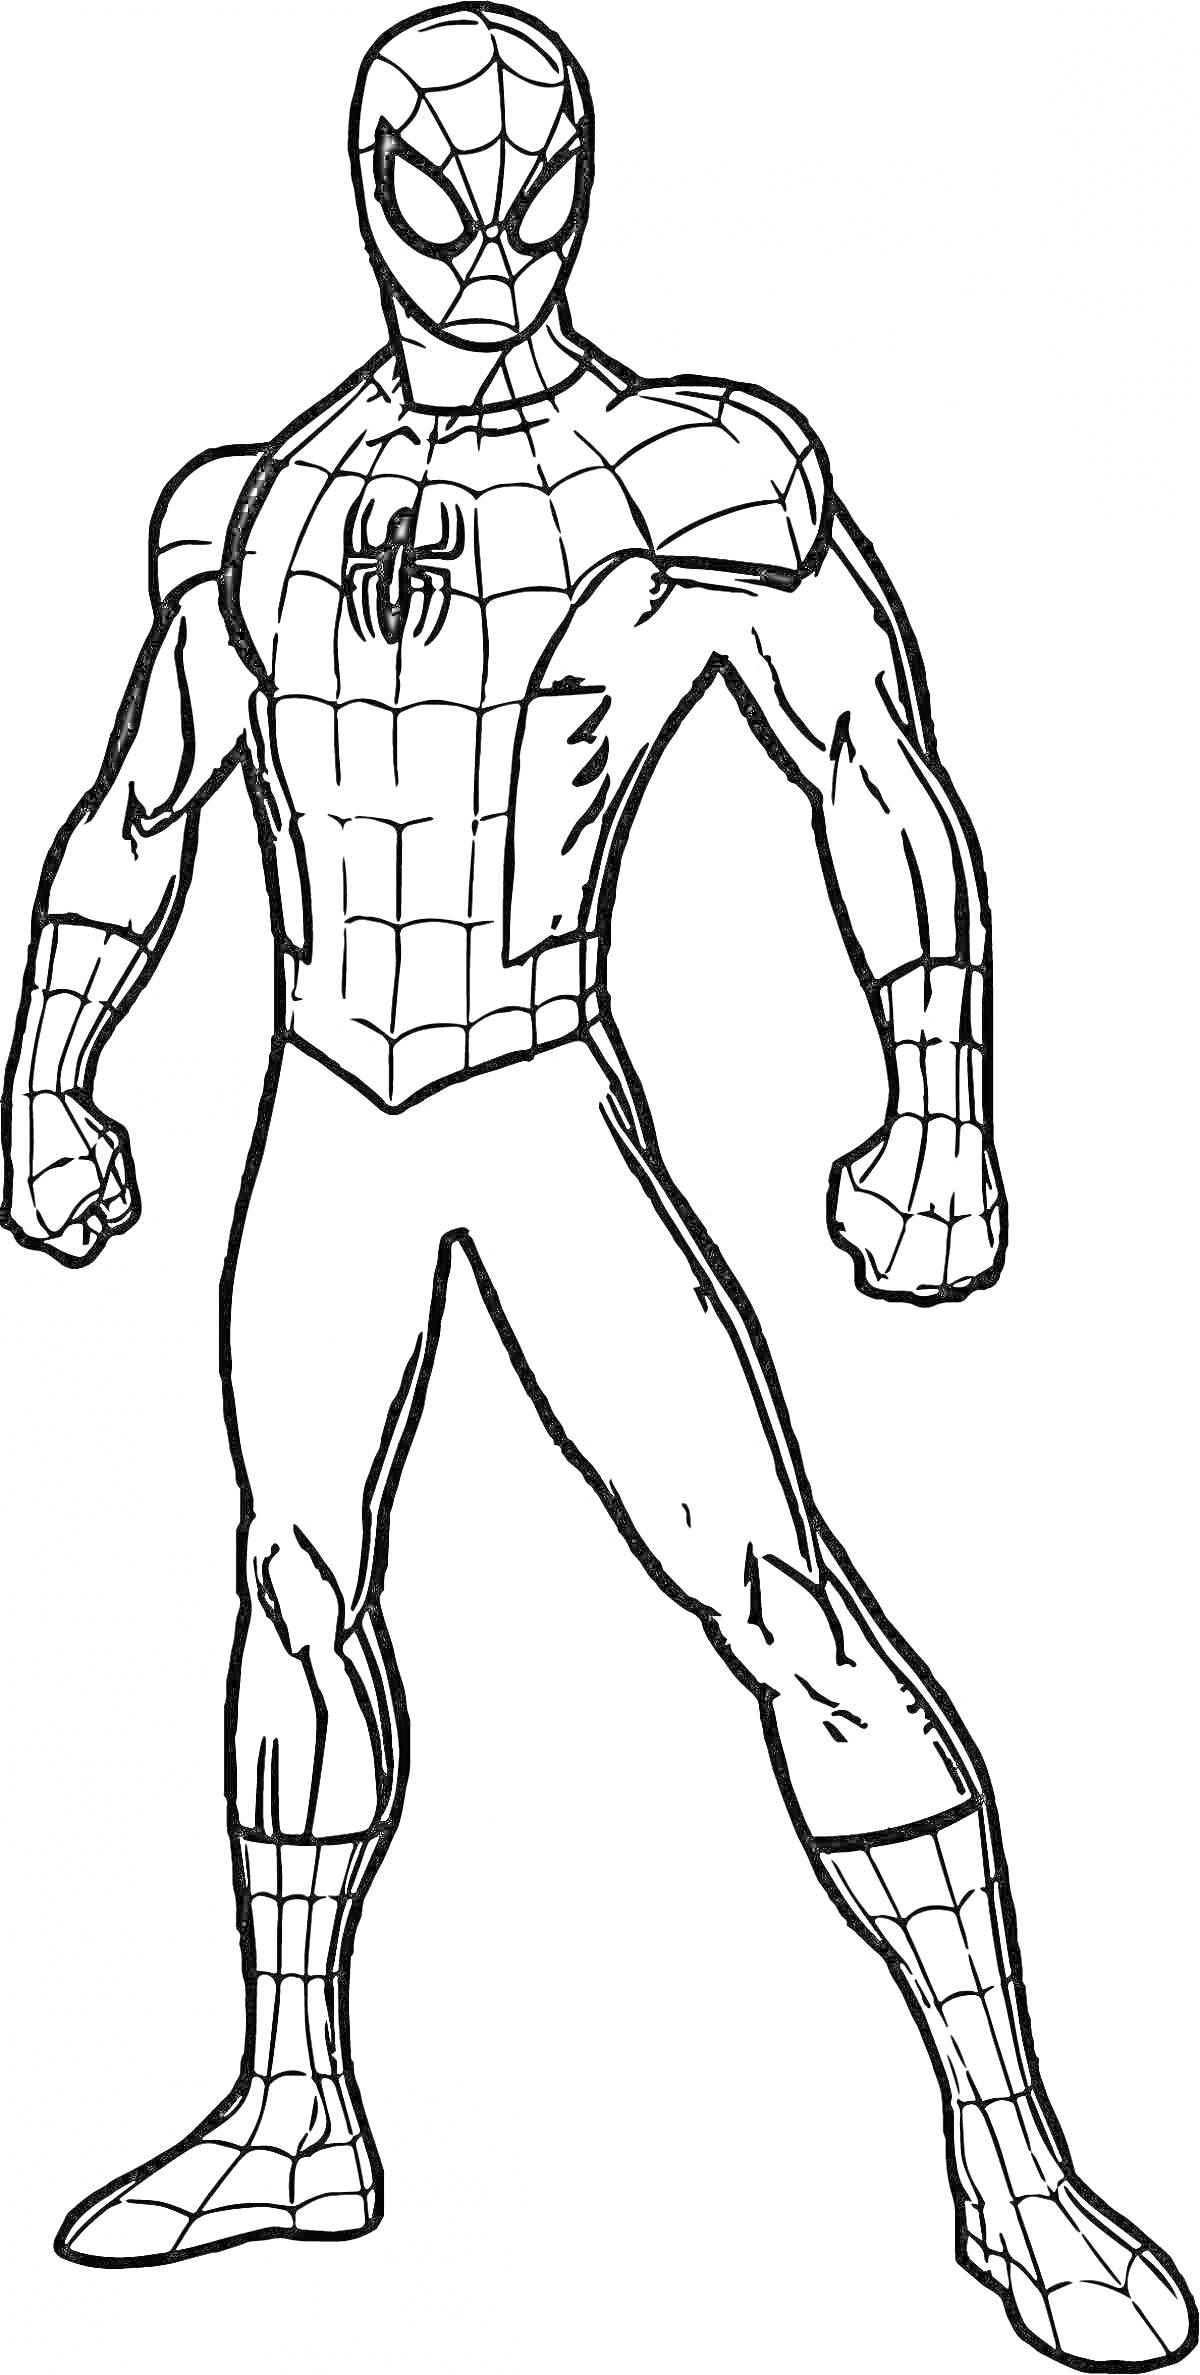 Раскраска Человек-паук в полный рост в боевой стойке, линия рисунка